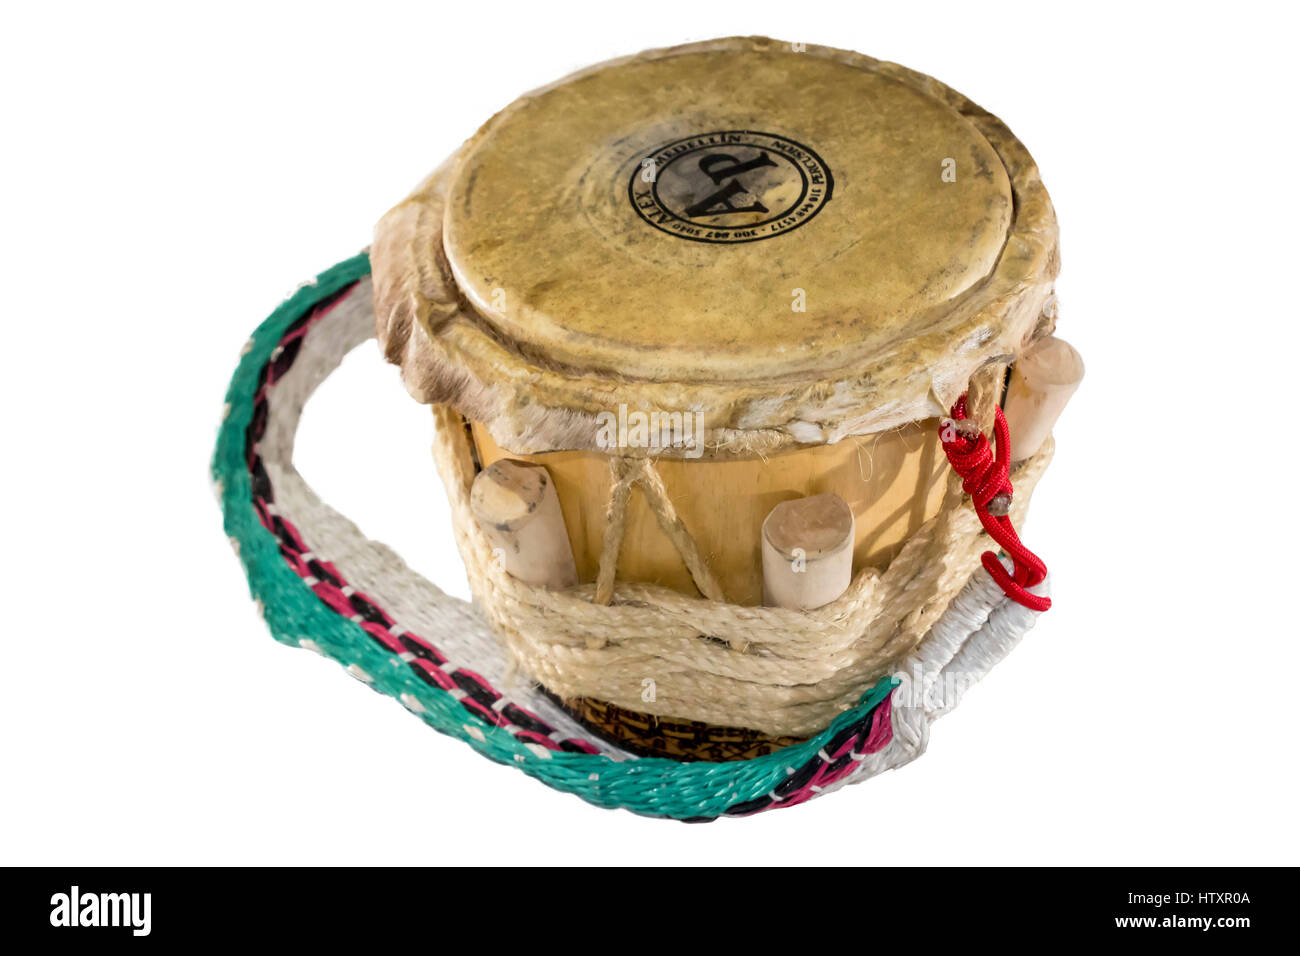 Anrufer Trommel, Tambor Llamador. Percussion-Instrument. Traditionelle Volksinstrumente von der Atlantikküste Kolumbiens verwendet, um Rhythmen als Cumbi interpretieren Stockfoto